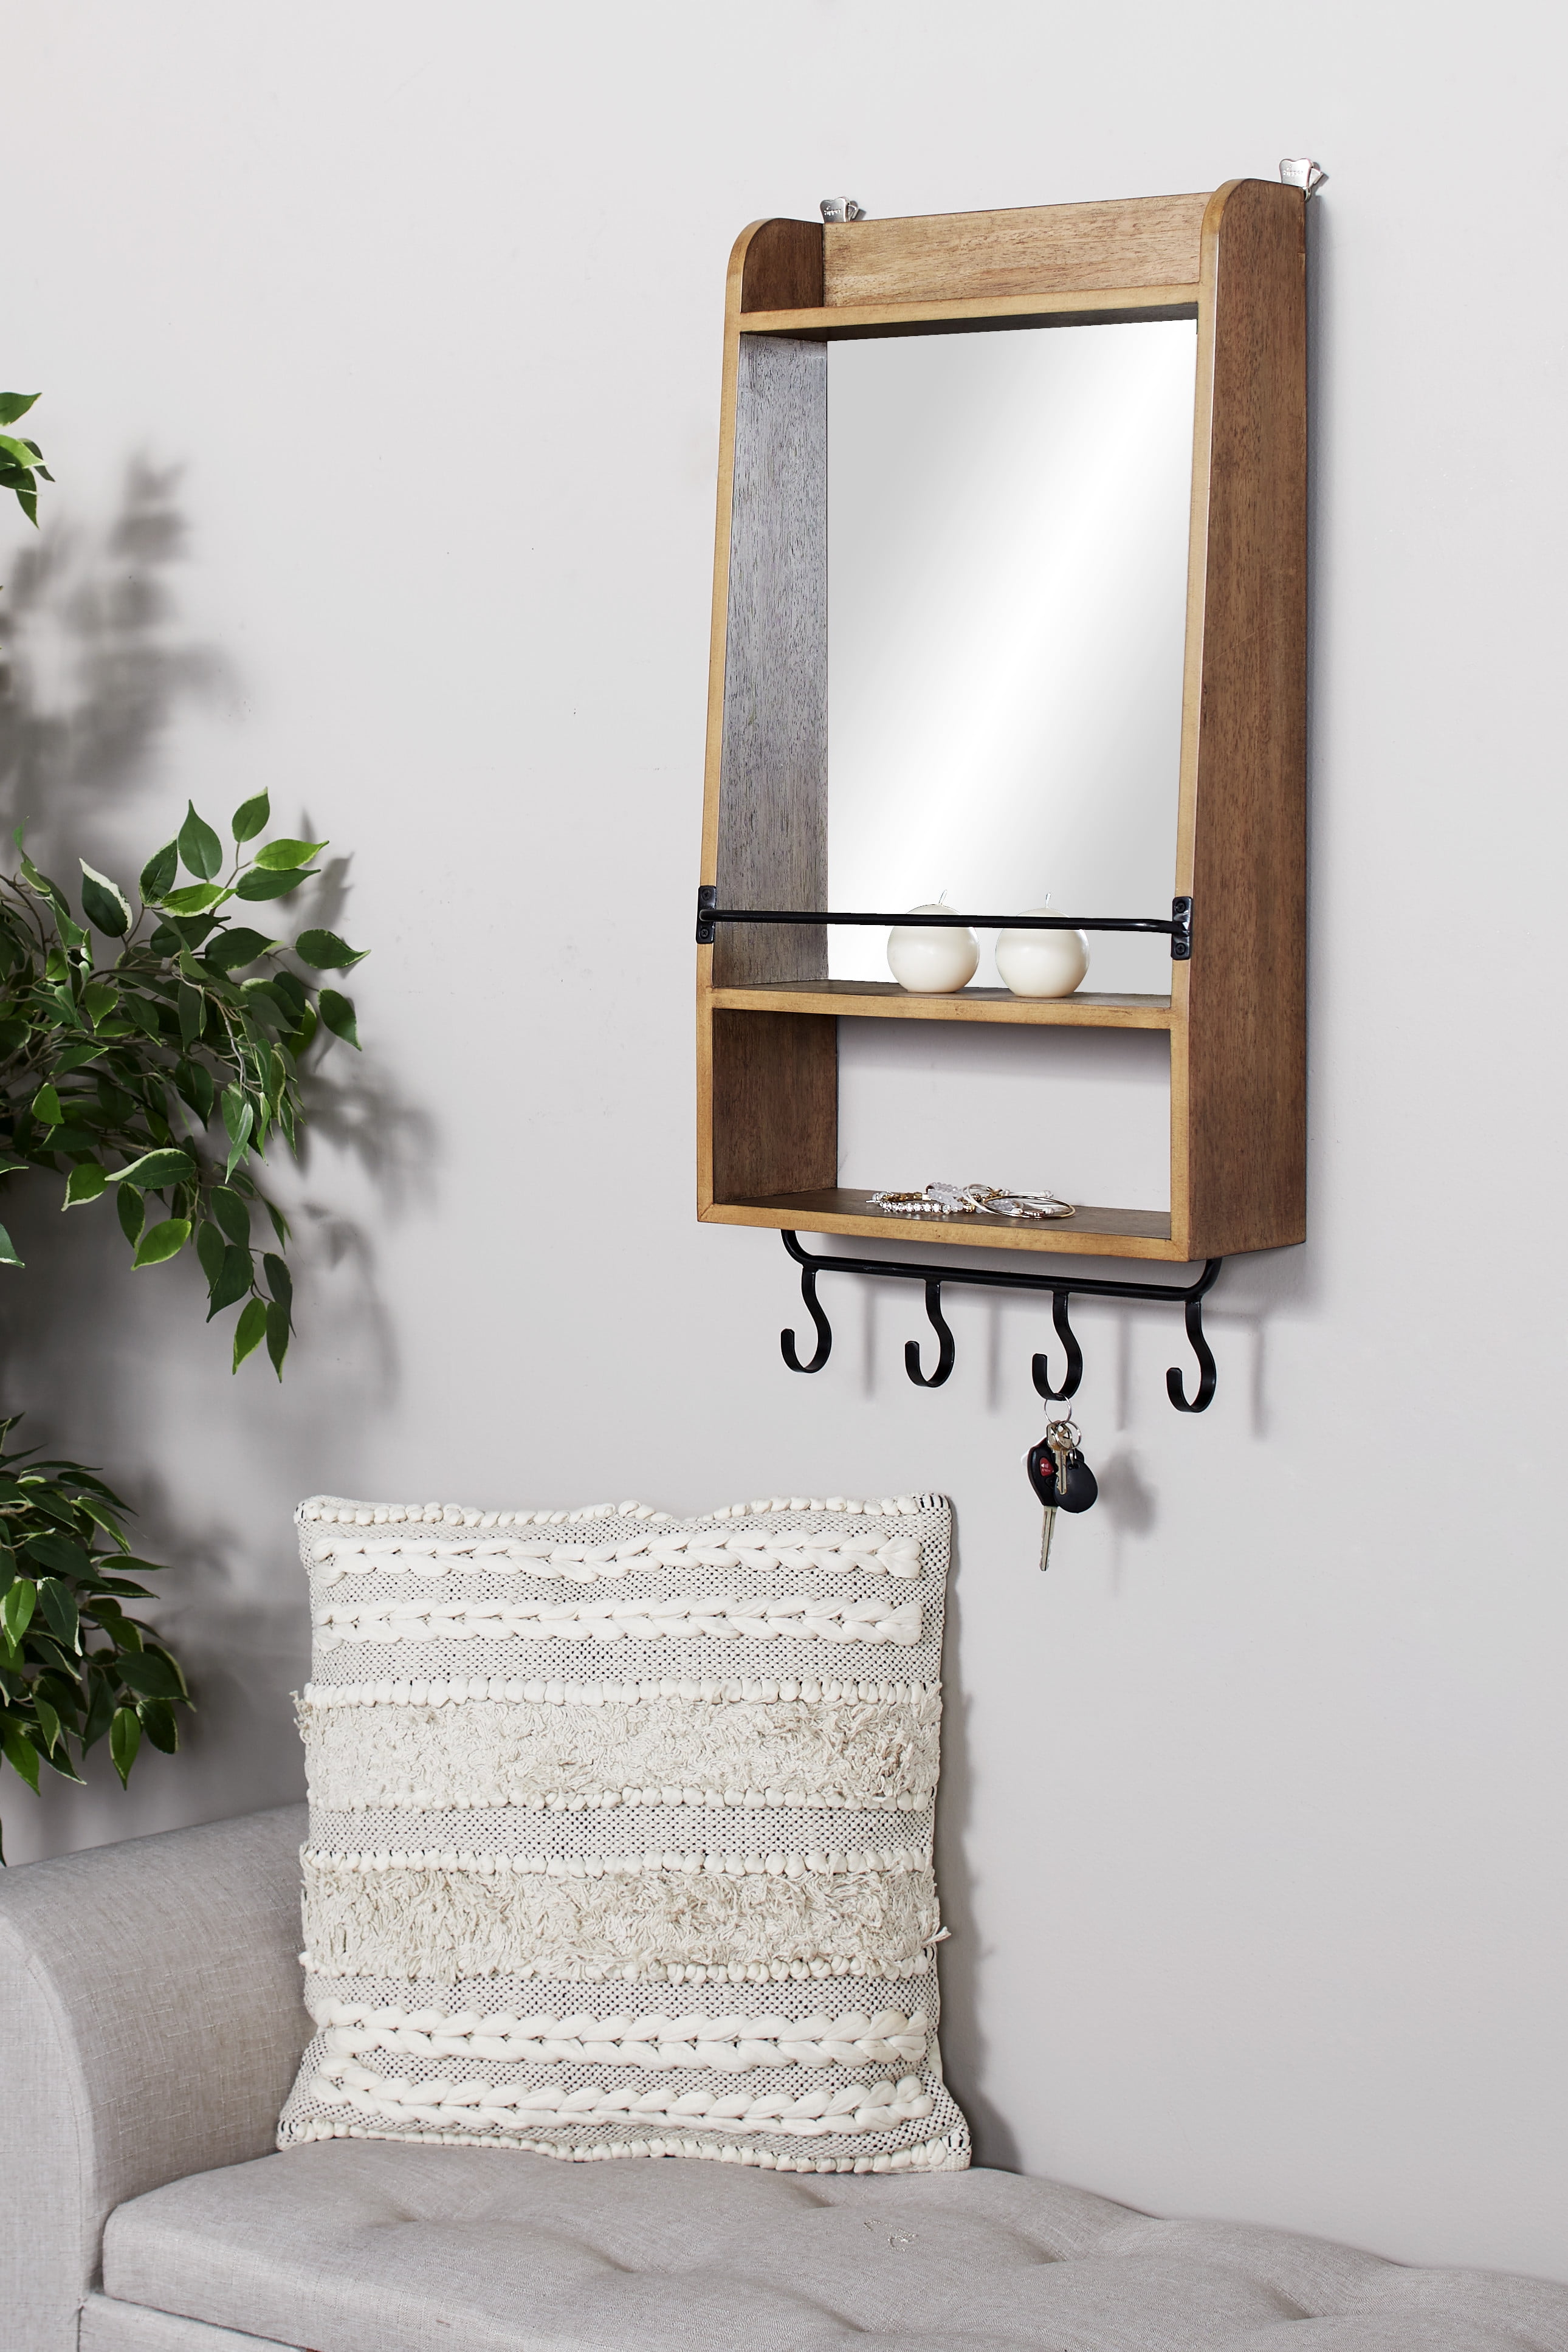 DecMode Rectangular Natural Wood Wall Mirror w/ Shelf & 4 Iron Hanging